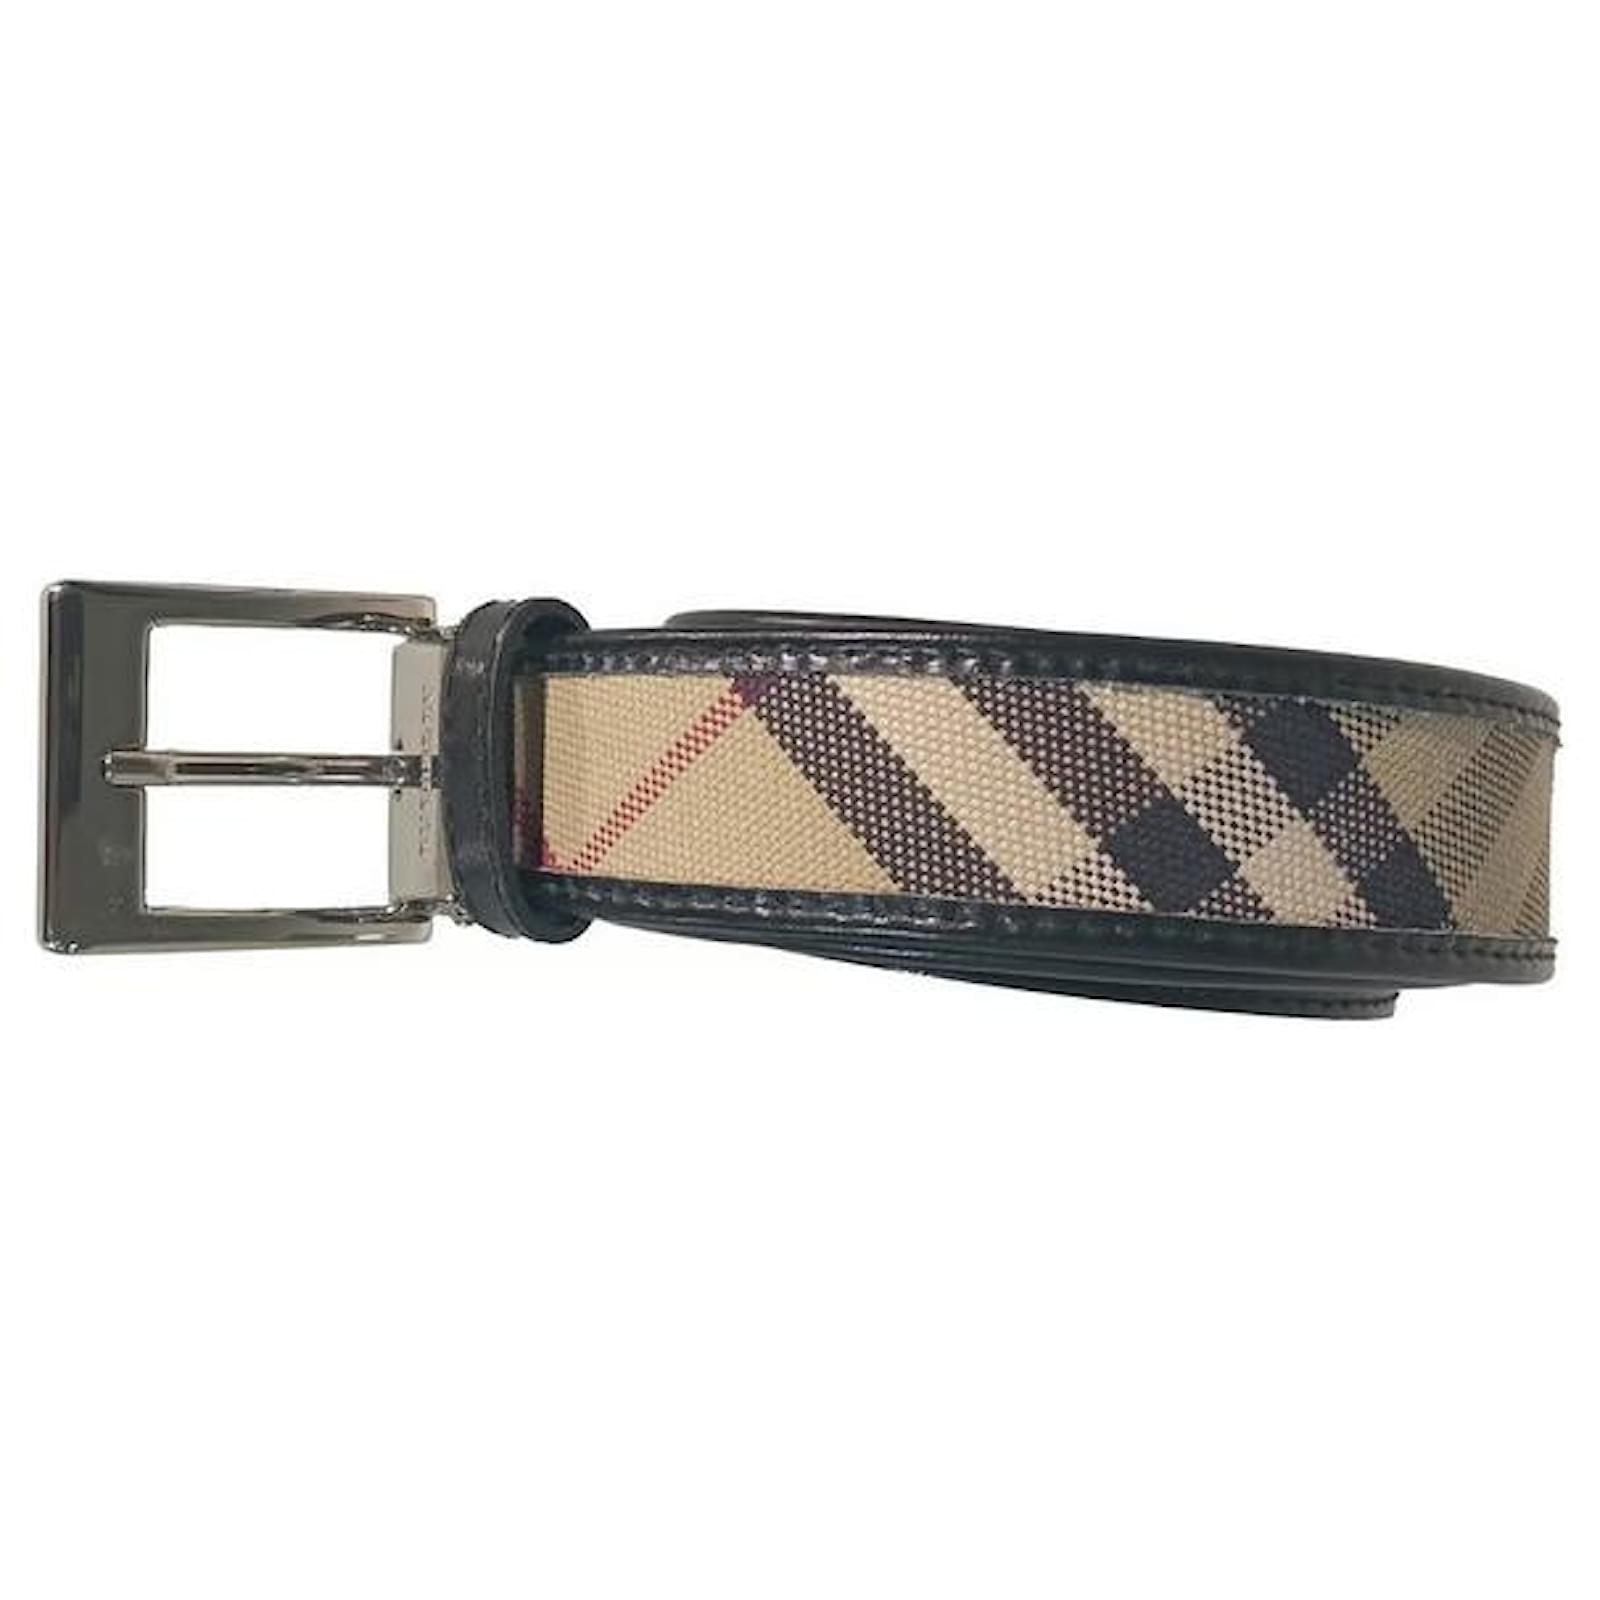 Burberry  Belts for women, Burberry belt, Belt